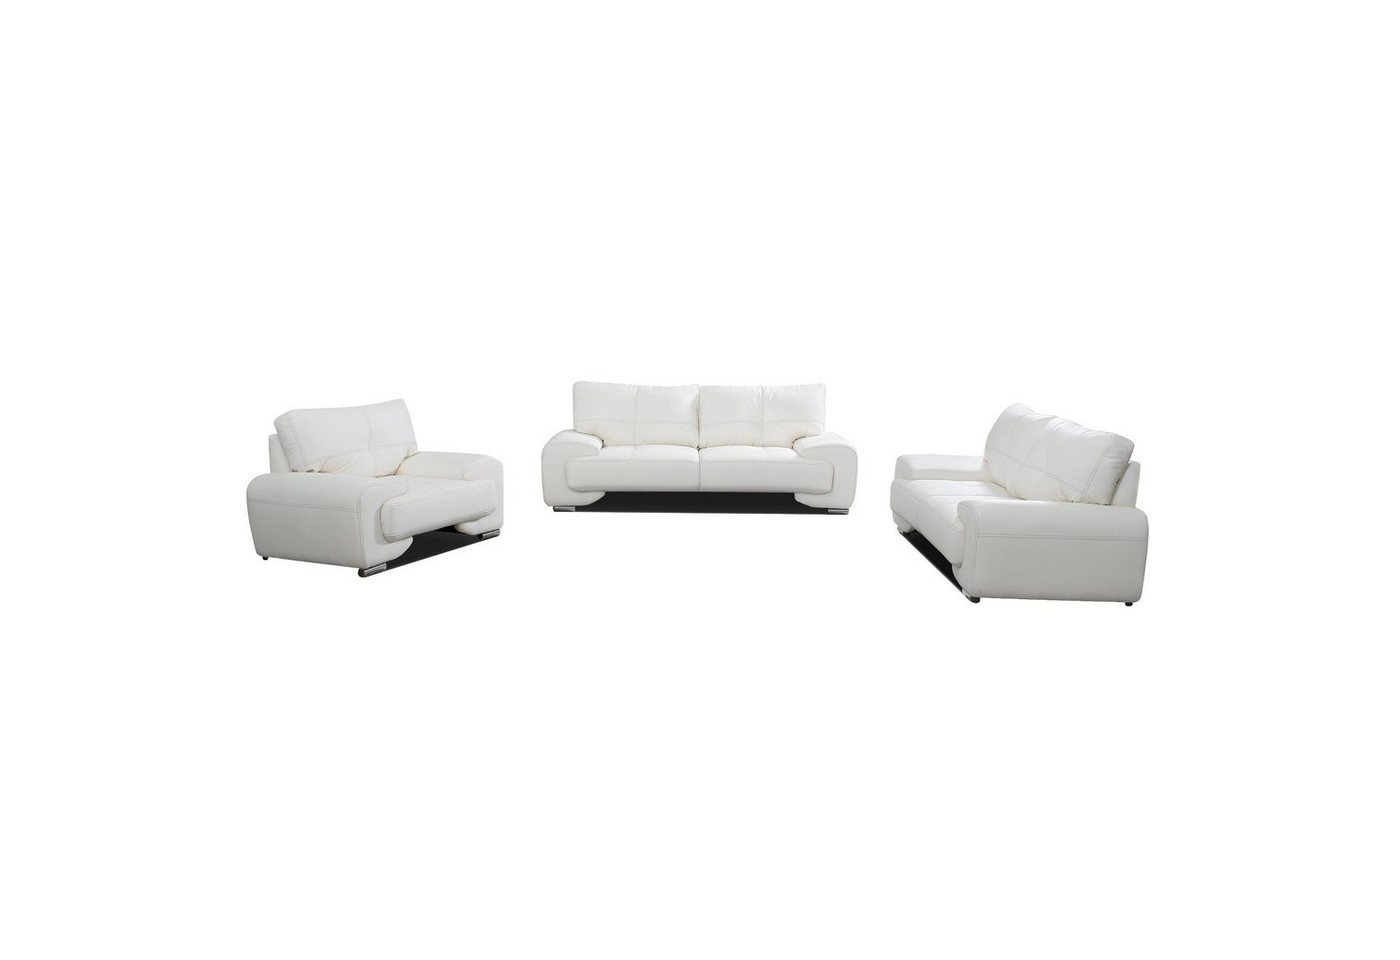 MOEBLO Sofa Couchgarnitur Florida Lux 3+2+1, Wohnzimmergarnitur 3+2+1 Dreisitzer-Sofa Zweisitzer-Sofa Sessel Polstermöbel-Set 3+2+1, Wohnzimmergarnitur 3+2+1 von MOEBLO